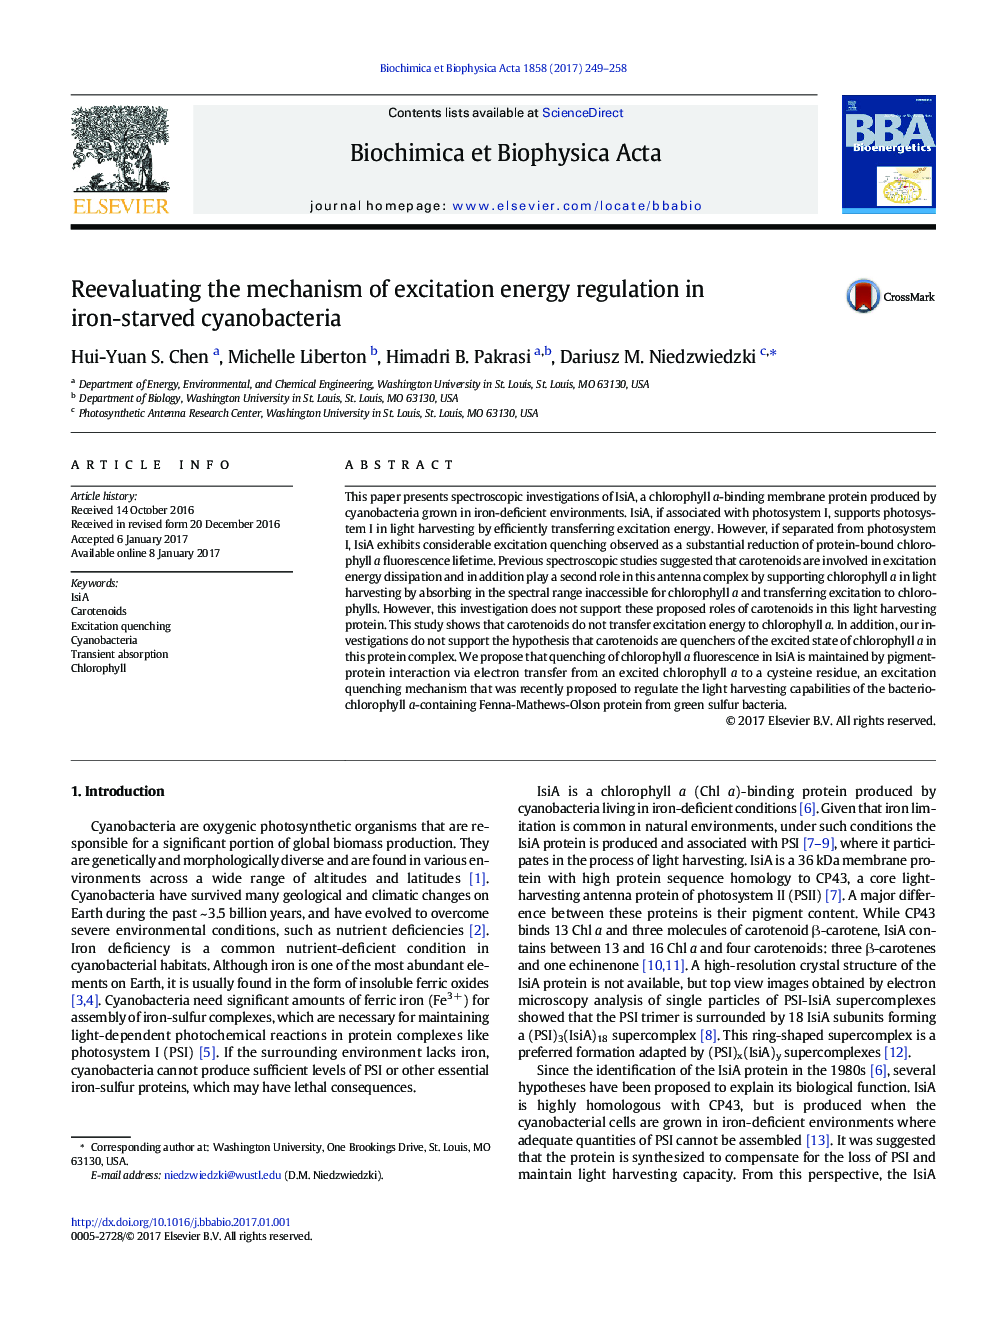 مجددا ارزیابی مکانیزم تنظیم مقادیر انرژی تحریک در سیانوباکتریای گاو آهن 